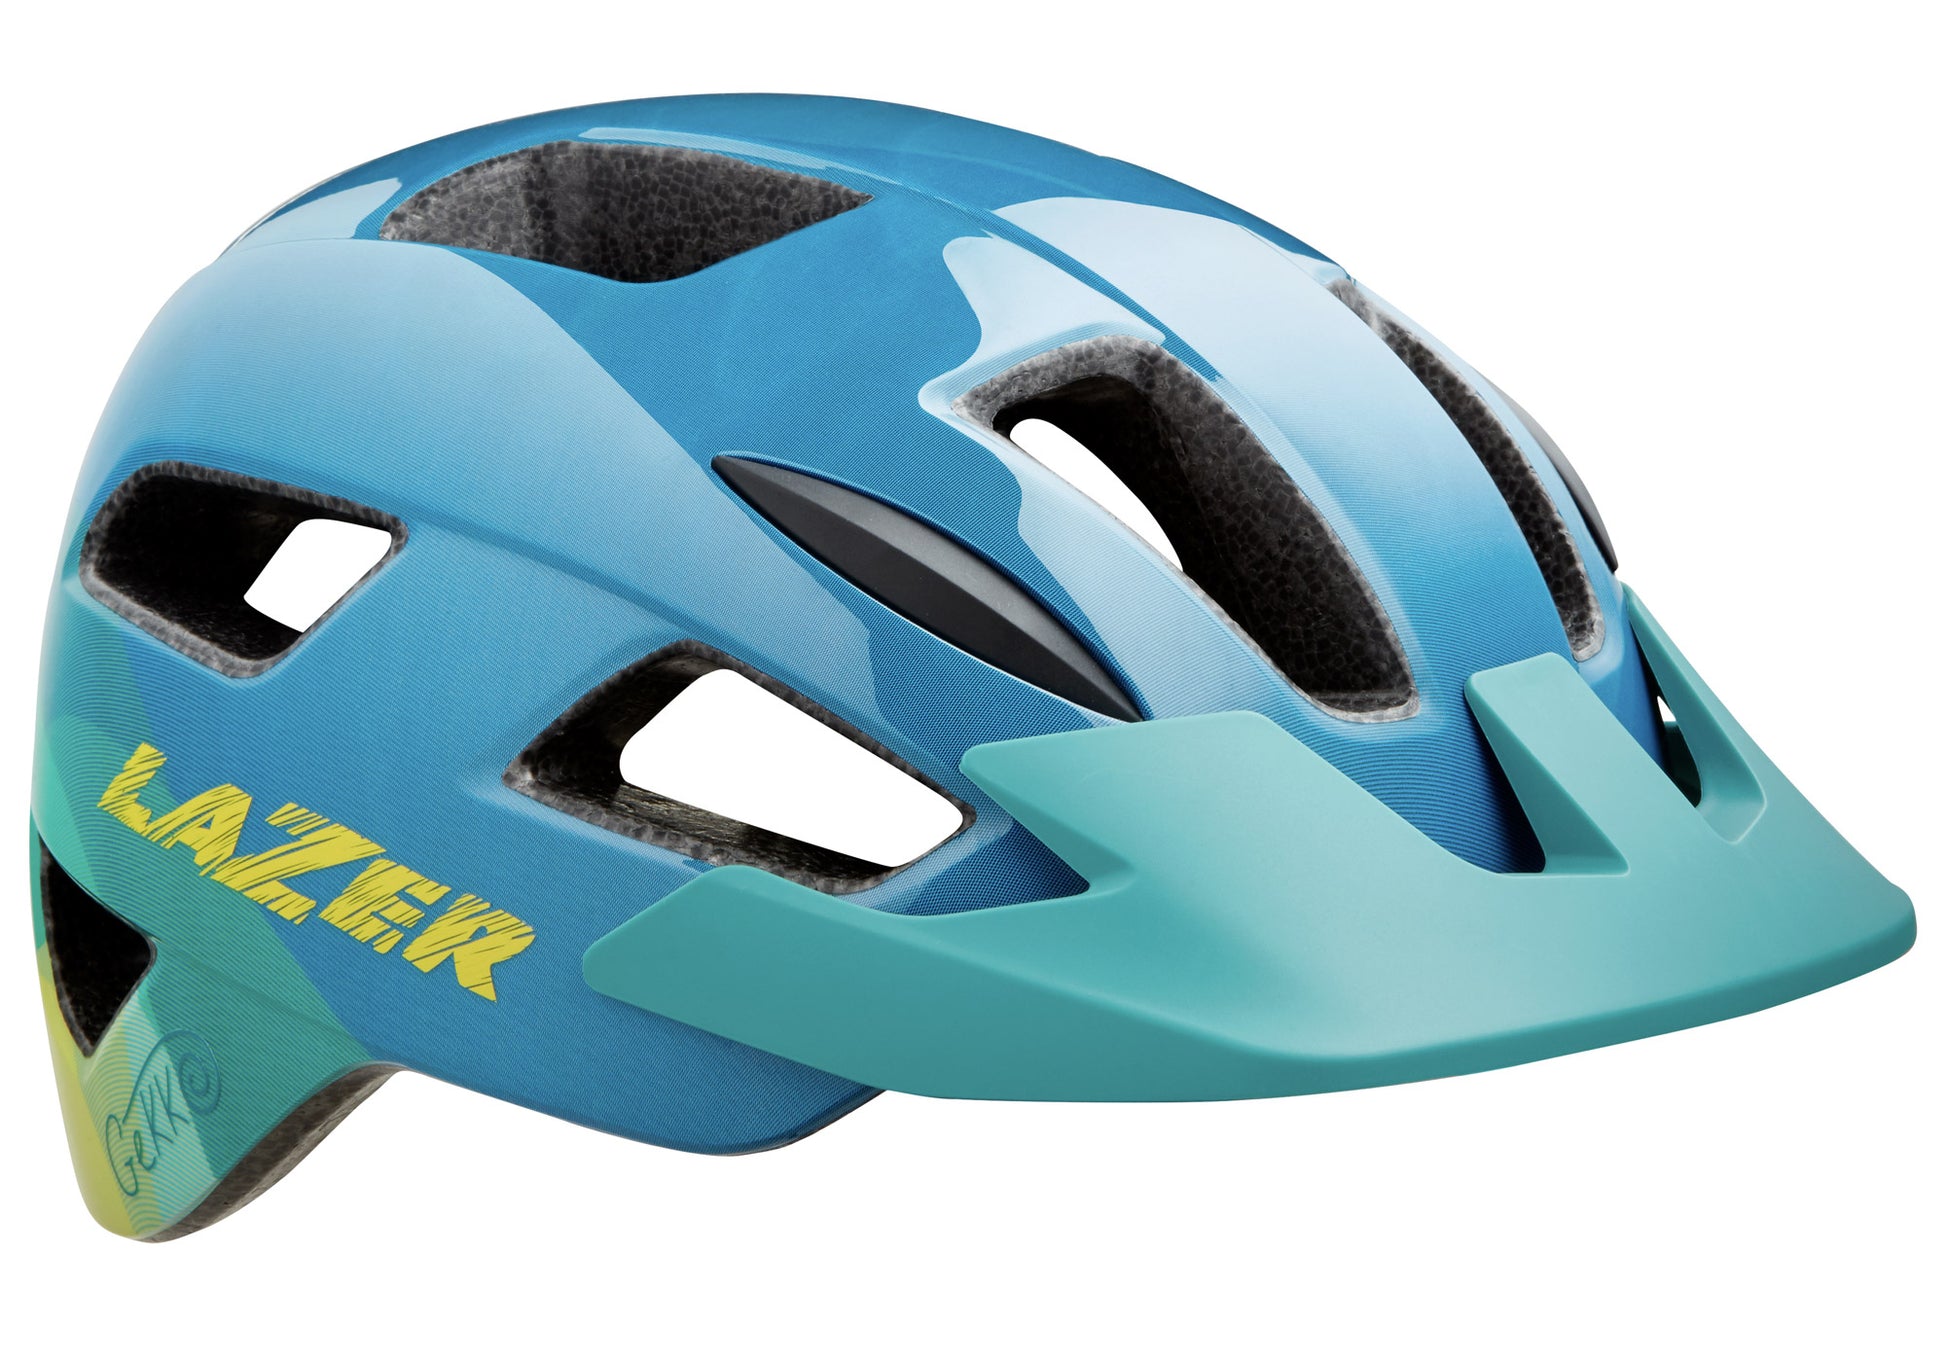 Lazer Gekko Unifit Children's Helmet 50-56cm, Blue Yellow